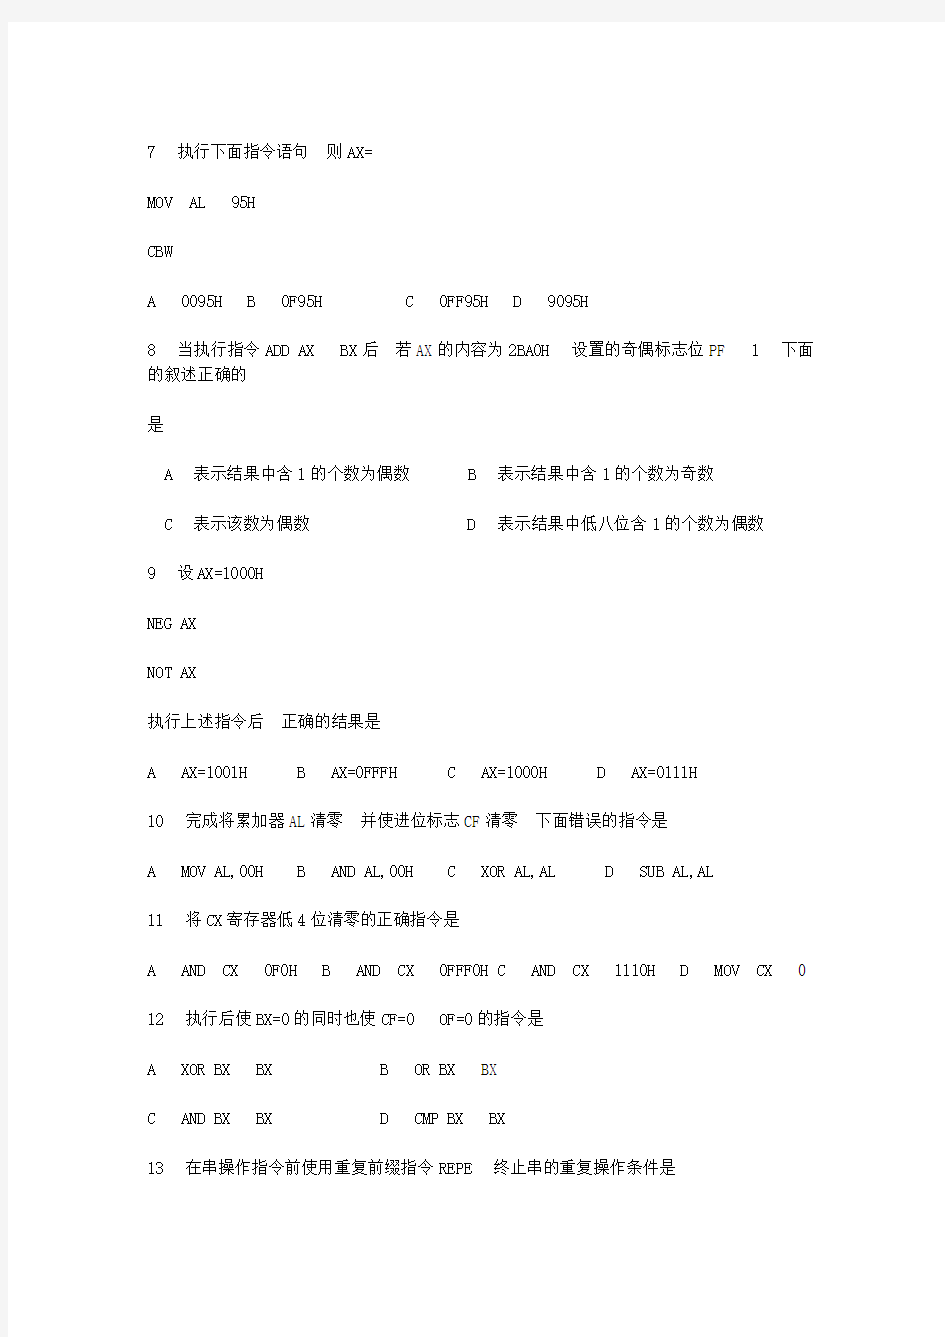 武汉理工大学汇编语言试题(三套_内含答案_2012年期末考试绝大部分是从上面出的)